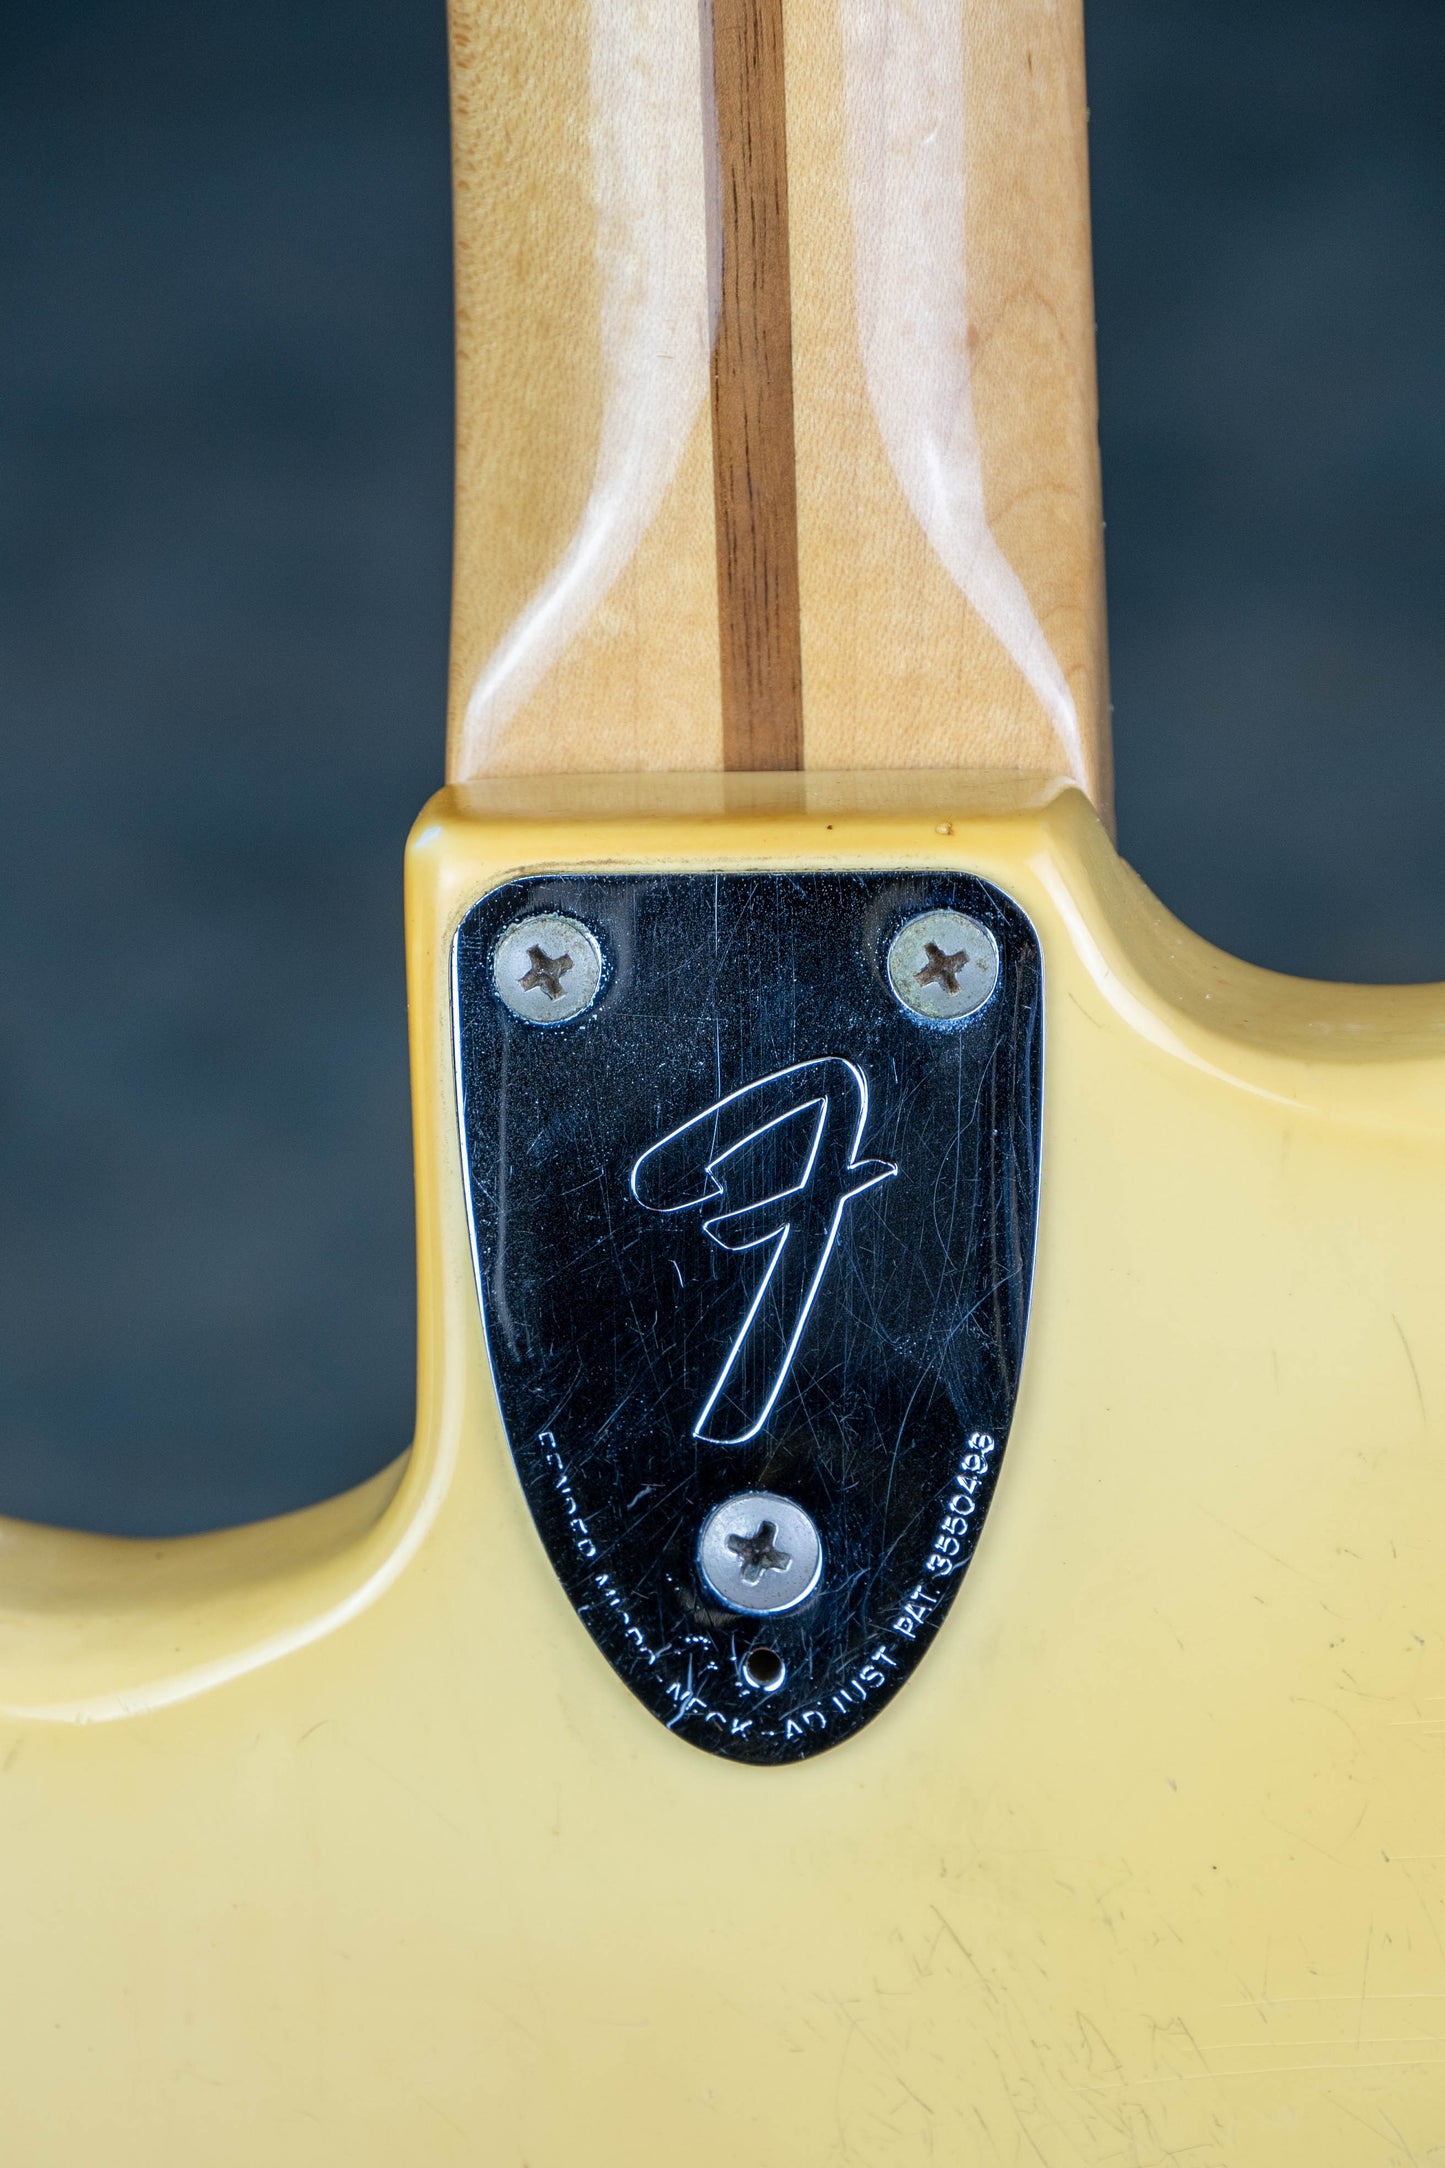 Fender Stratocaster 1978 Olympic White